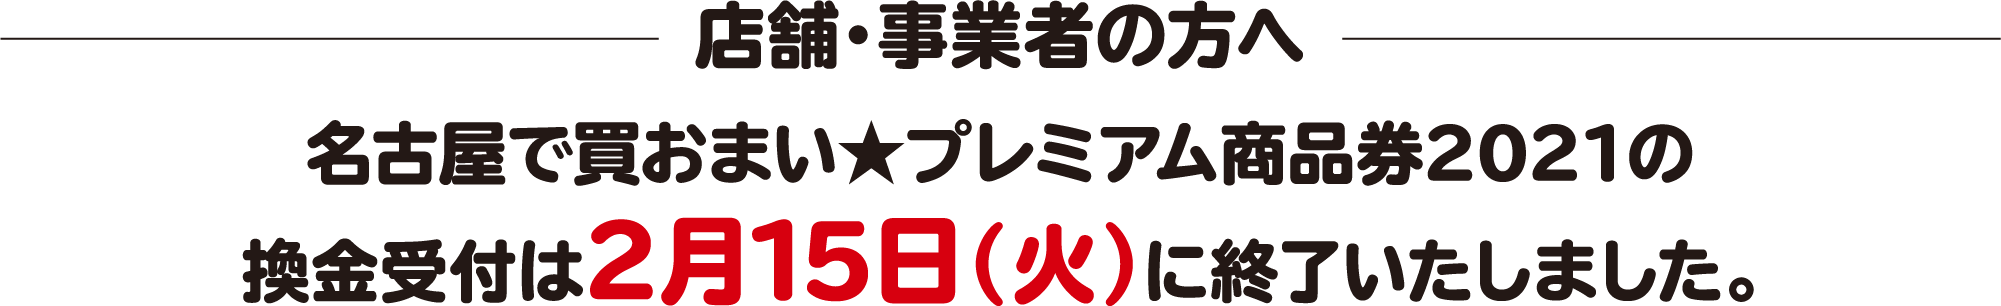 店舗・事業者の方へ名古屋で買おまい★プレミアム商品券2021の換金受付は2月15日（火）に終了いたしました。